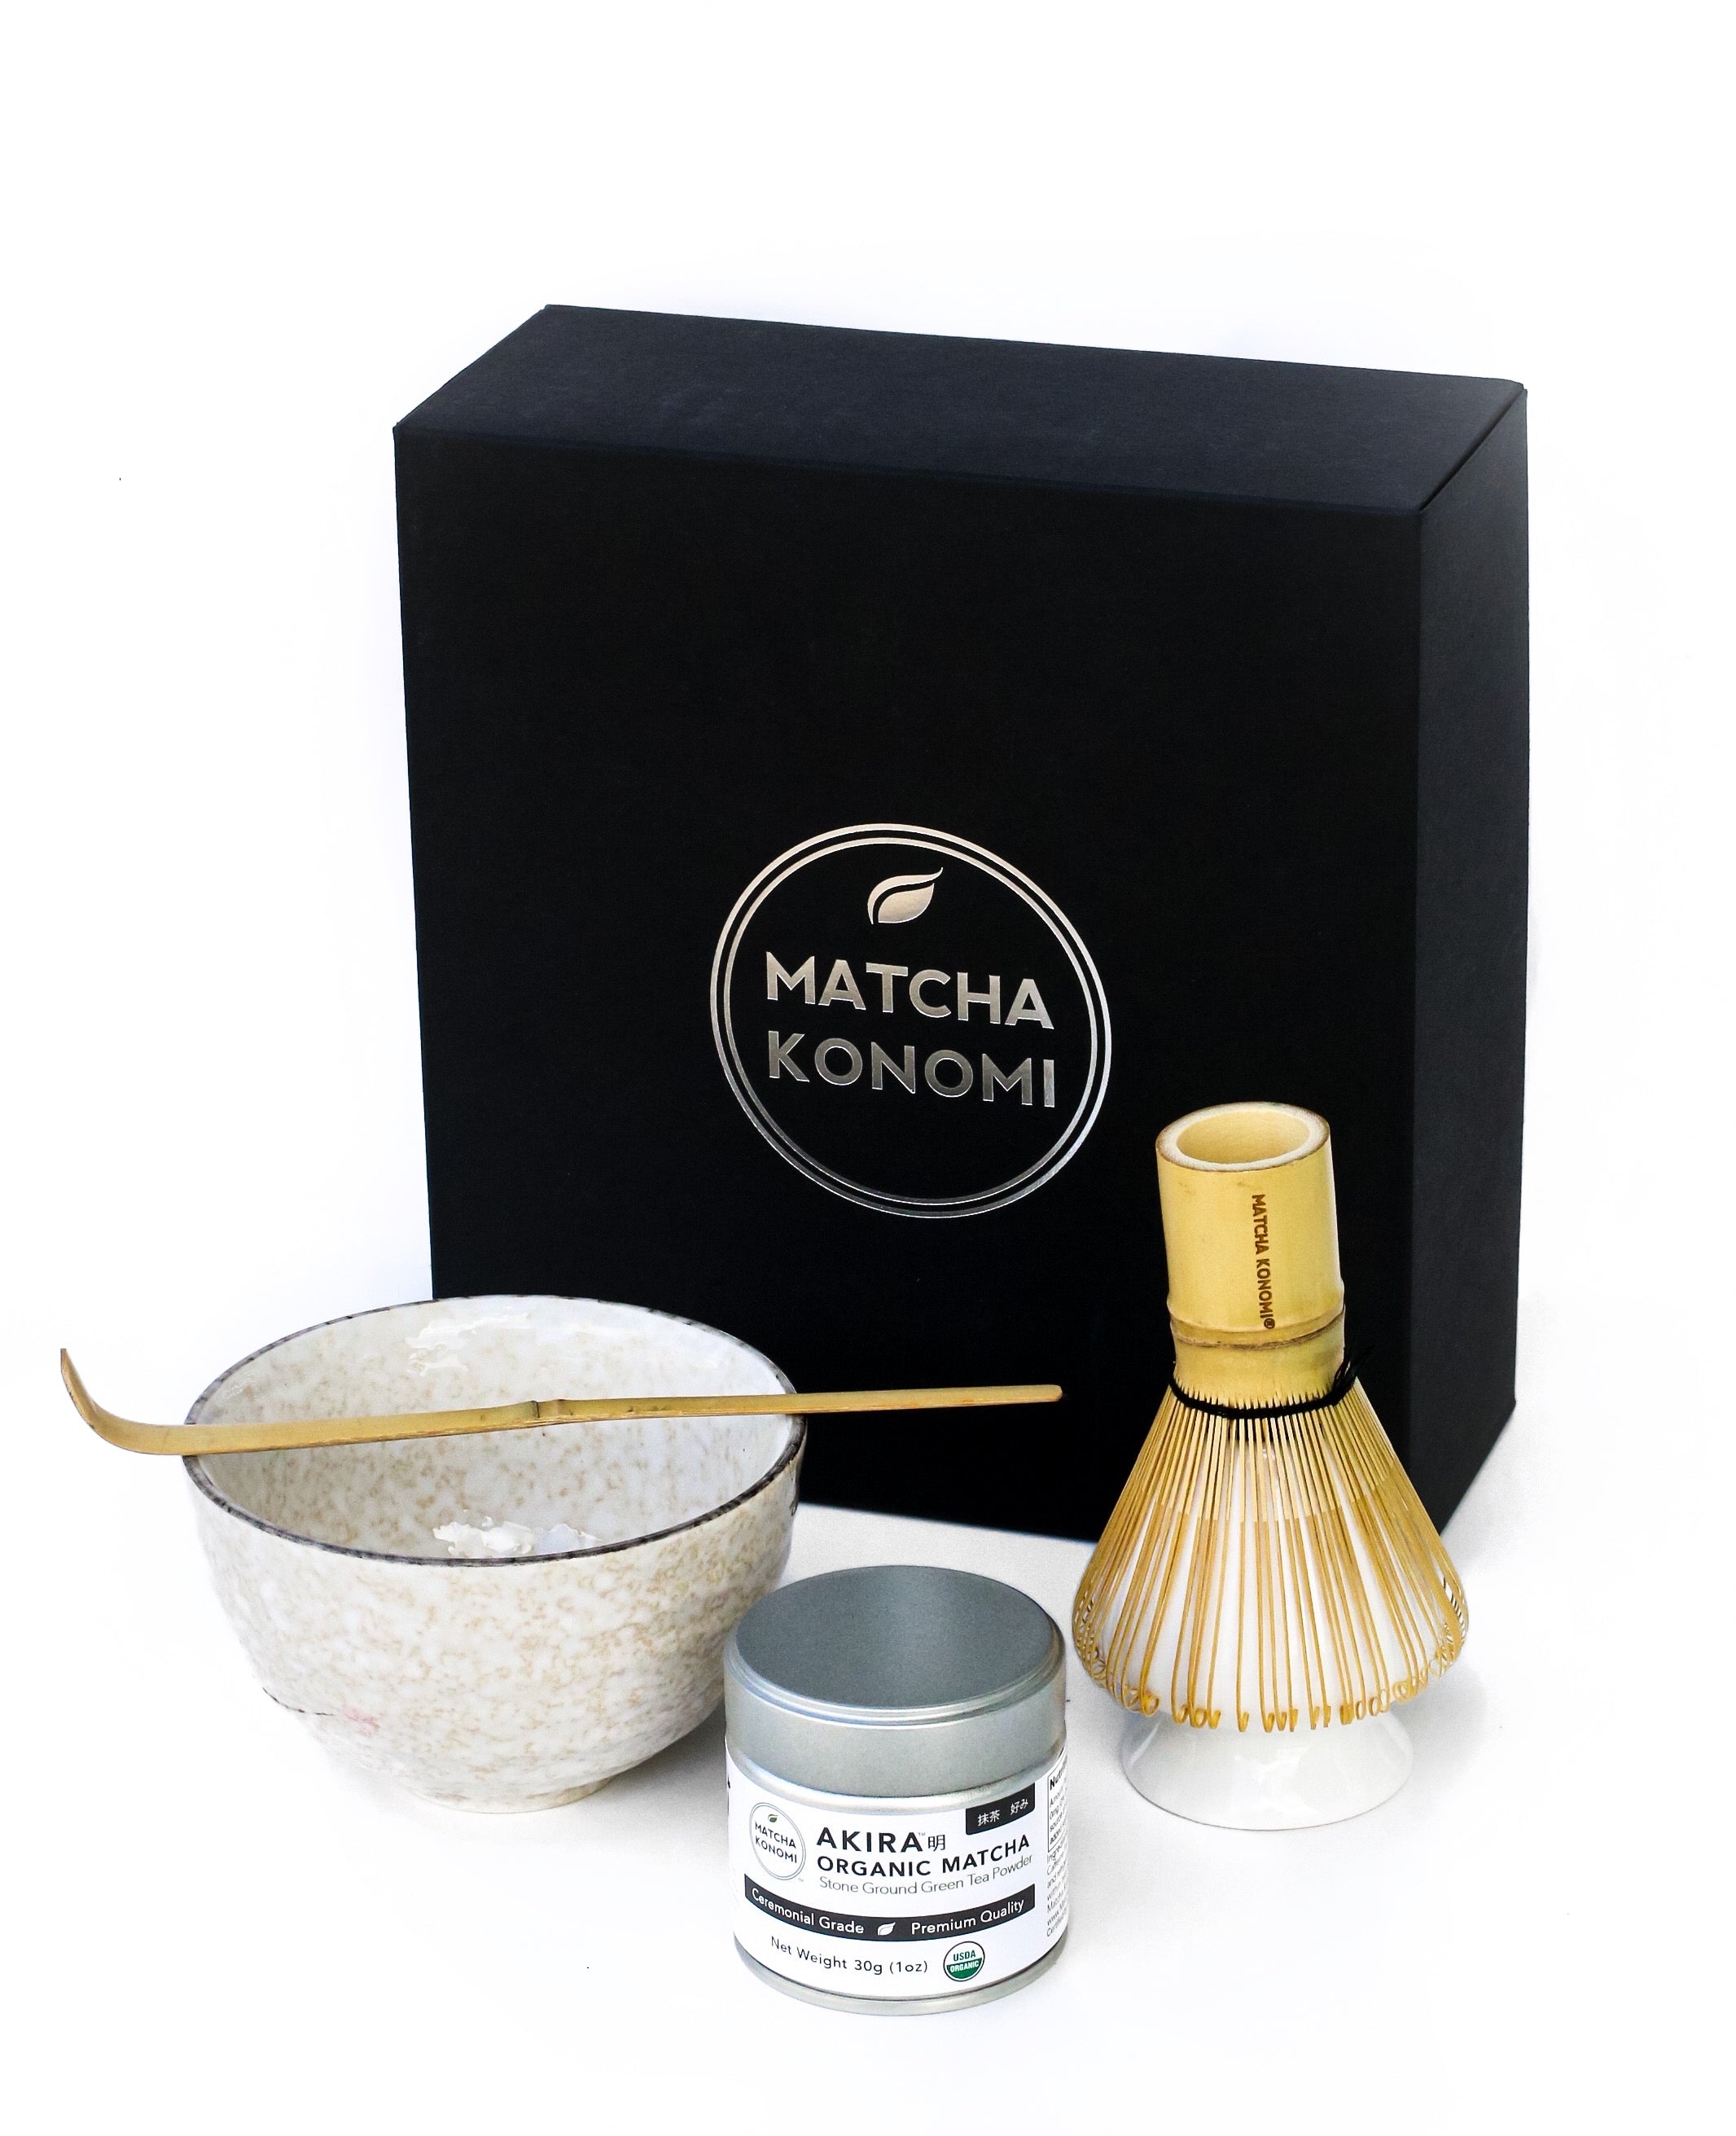 Matcha Gift Set – Matcha Konomi